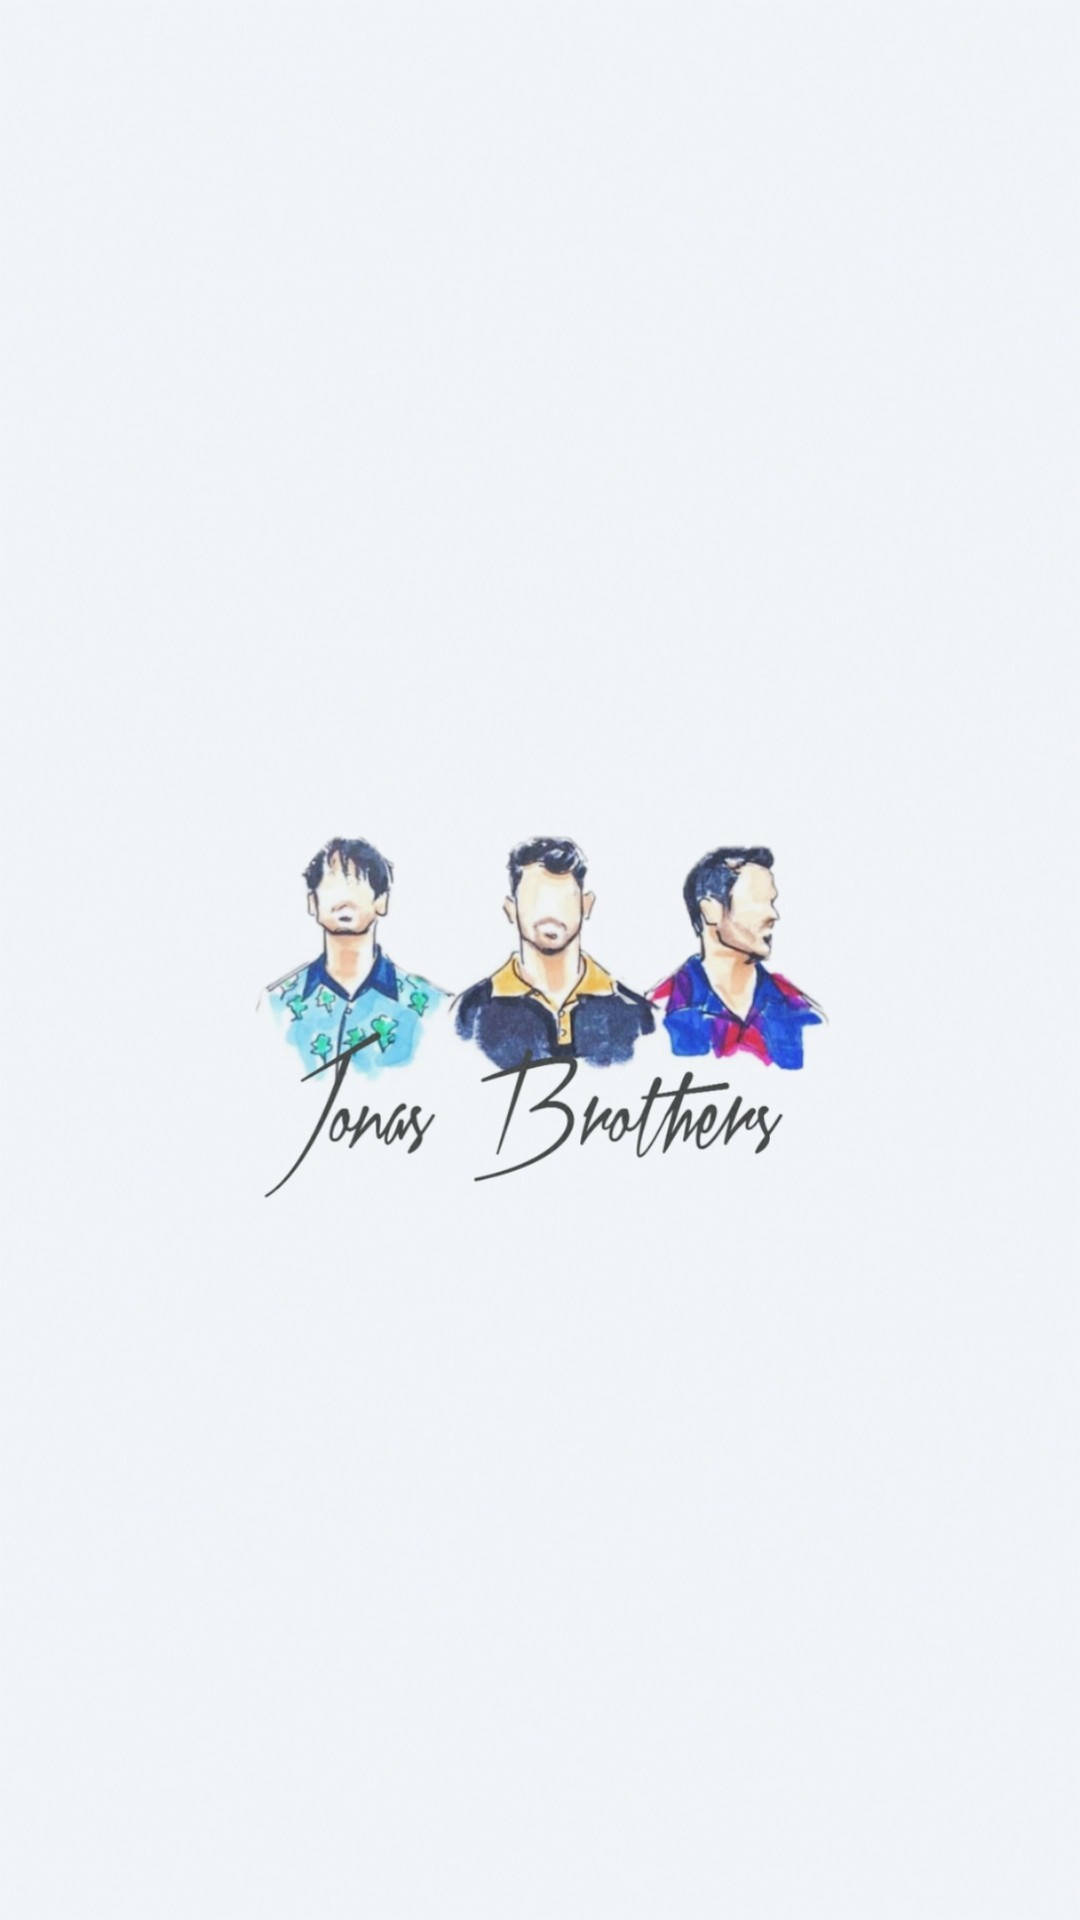 Jonas Brothers Watercolor Vector Art Background